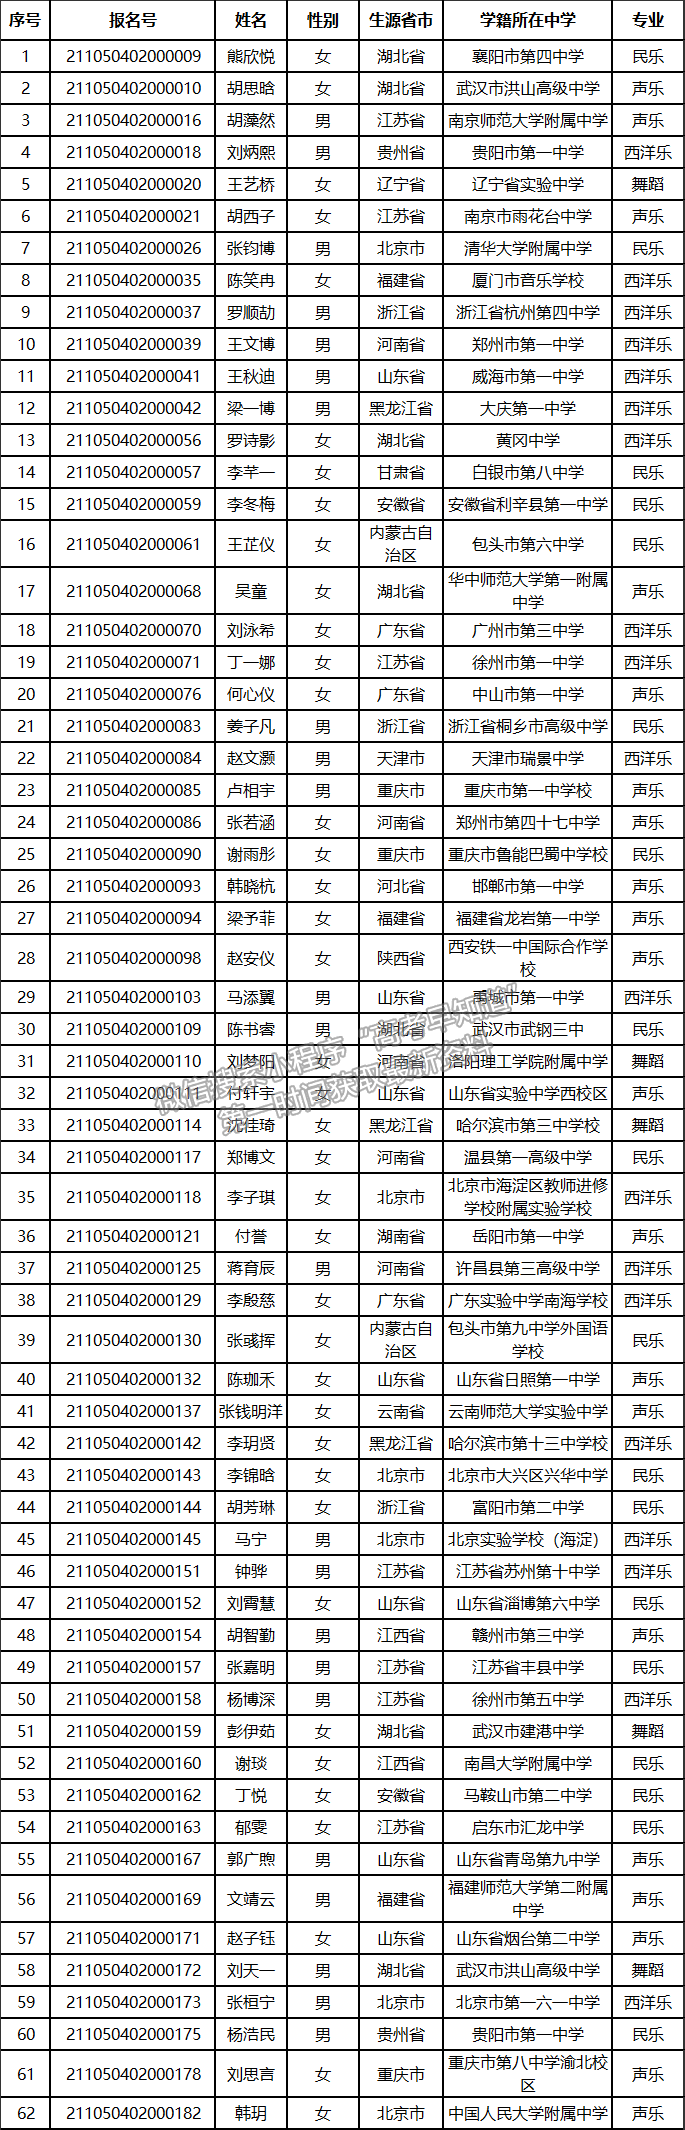 华中农业大学2021年高水平艺术团初审合格名单公示